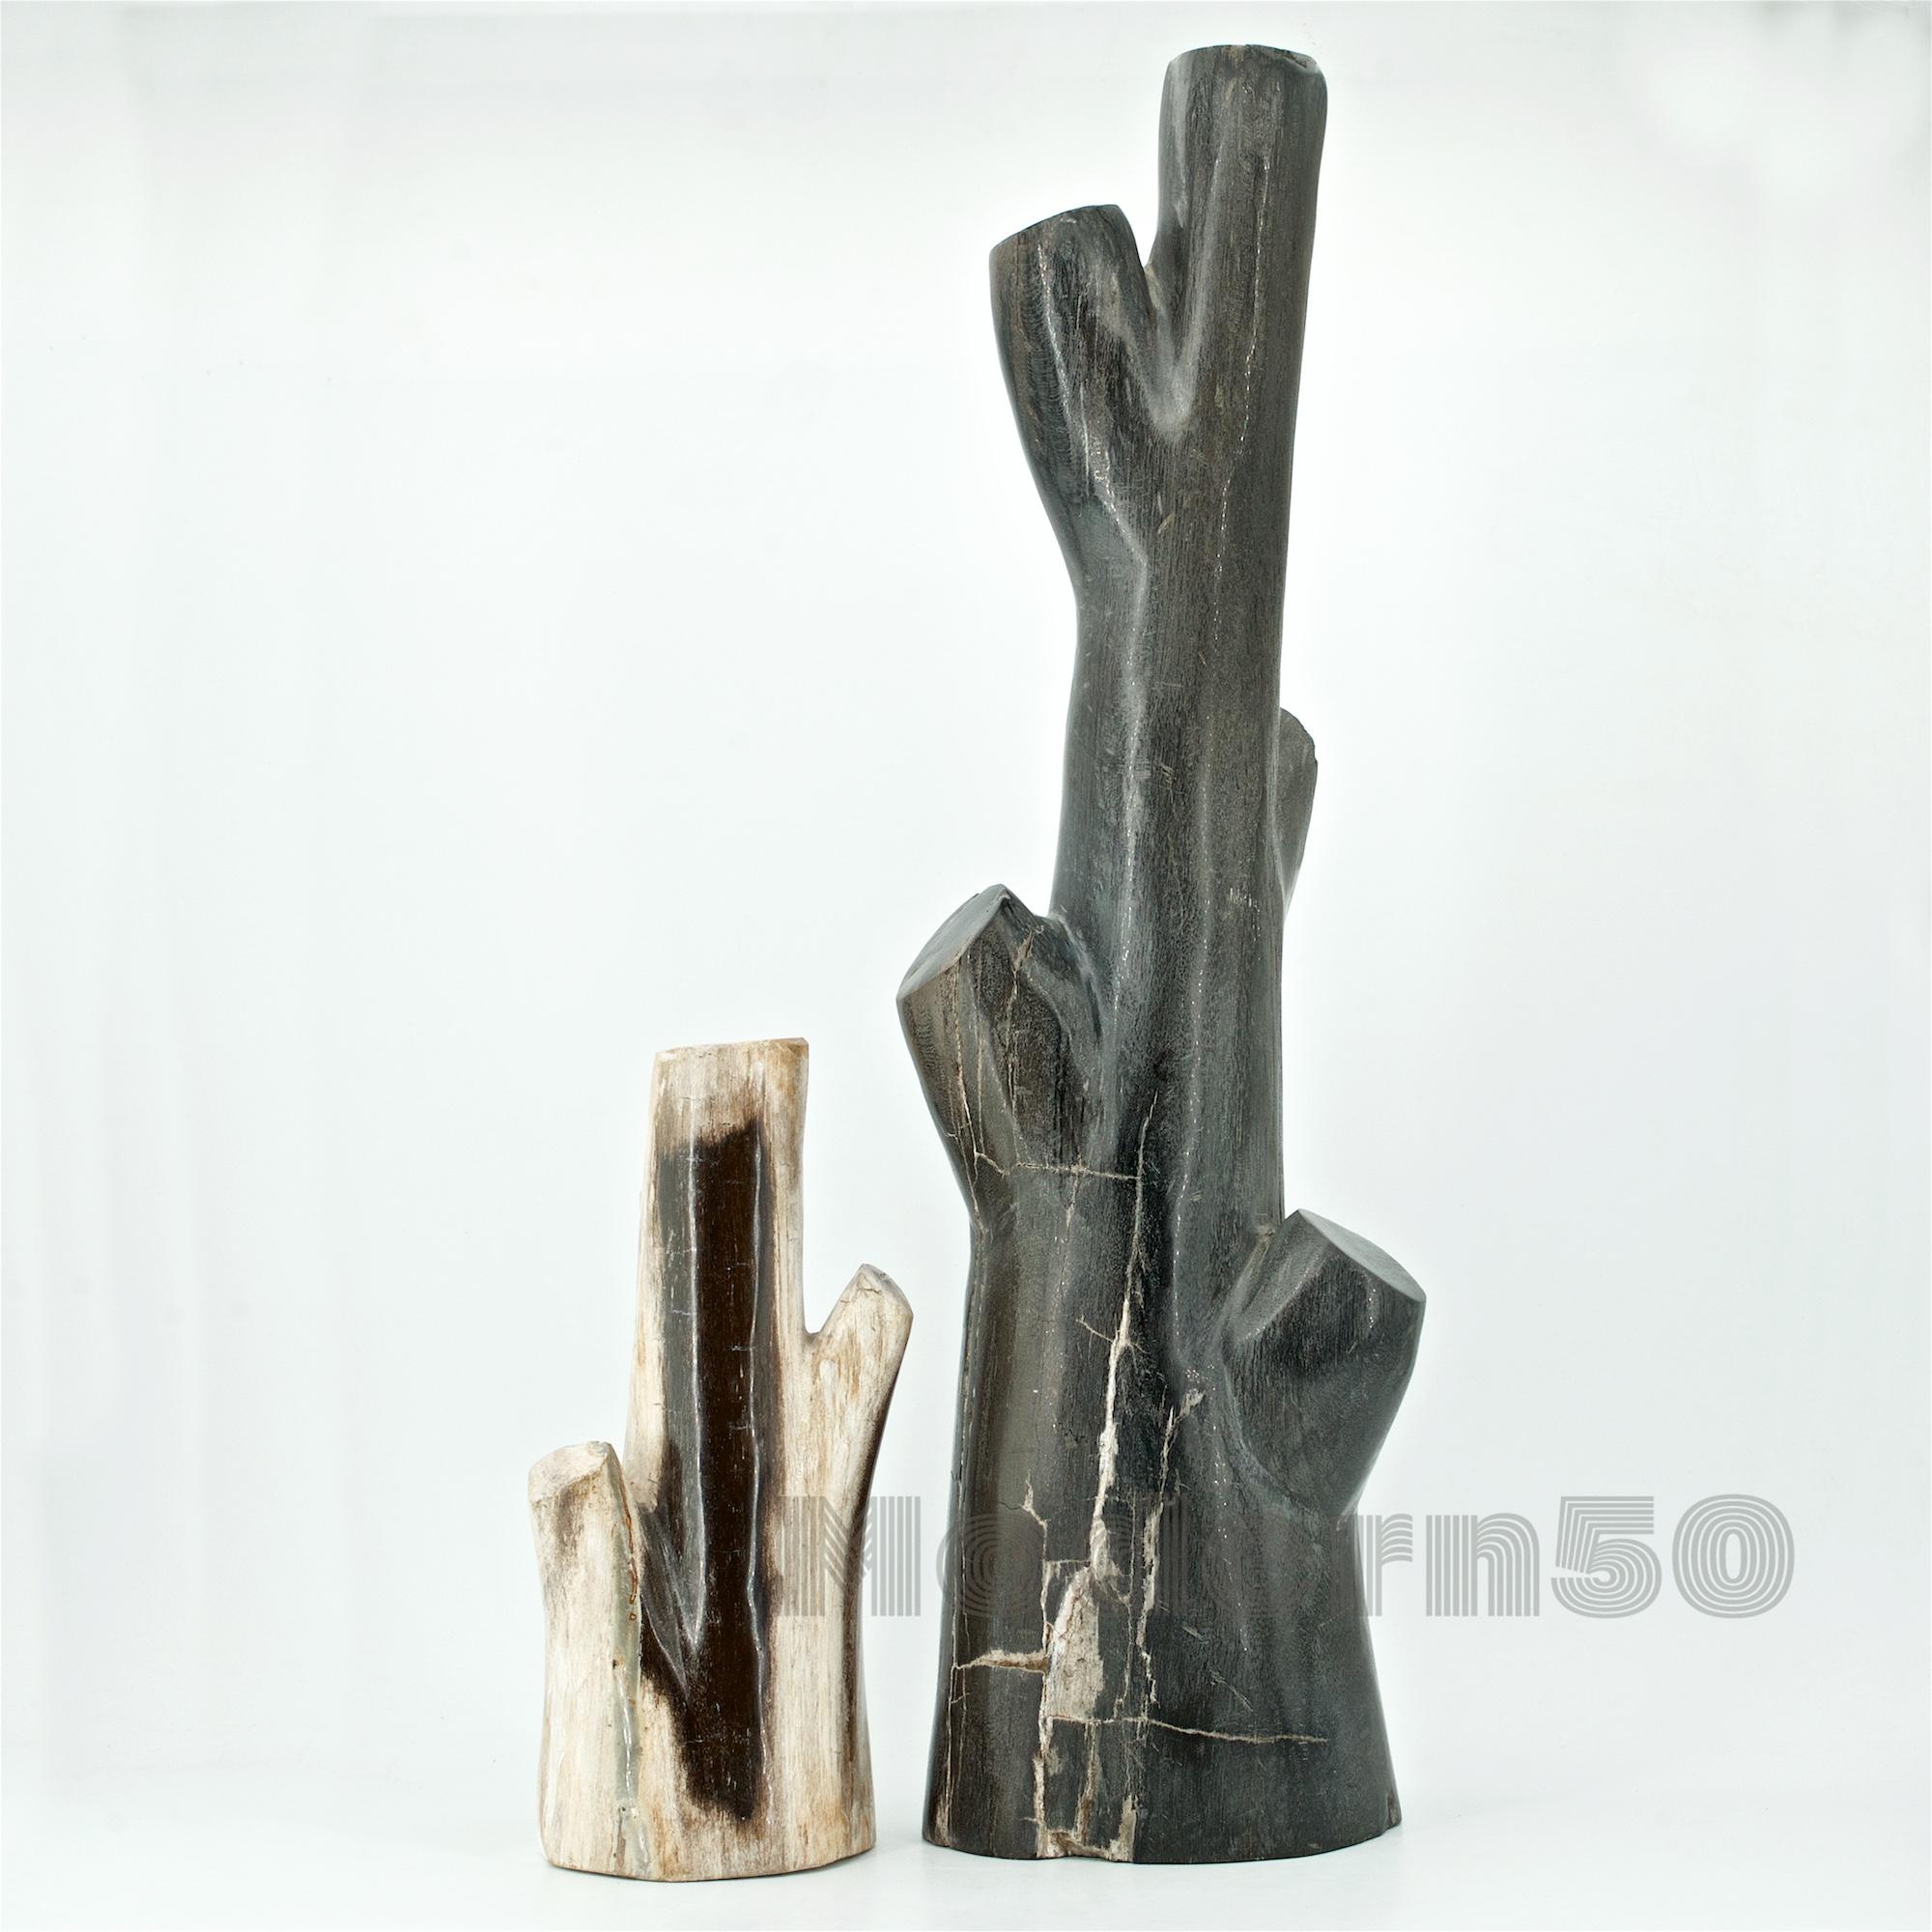 Rare paire de sculptures d'arbres en bois pétrifié, vieil artisanat de studio de l'Ouest américain.
Blanc H 9 3/8 in. / 3.9 lbs.
Noir H 20 3/4 in. / 15.12 lbs.
 